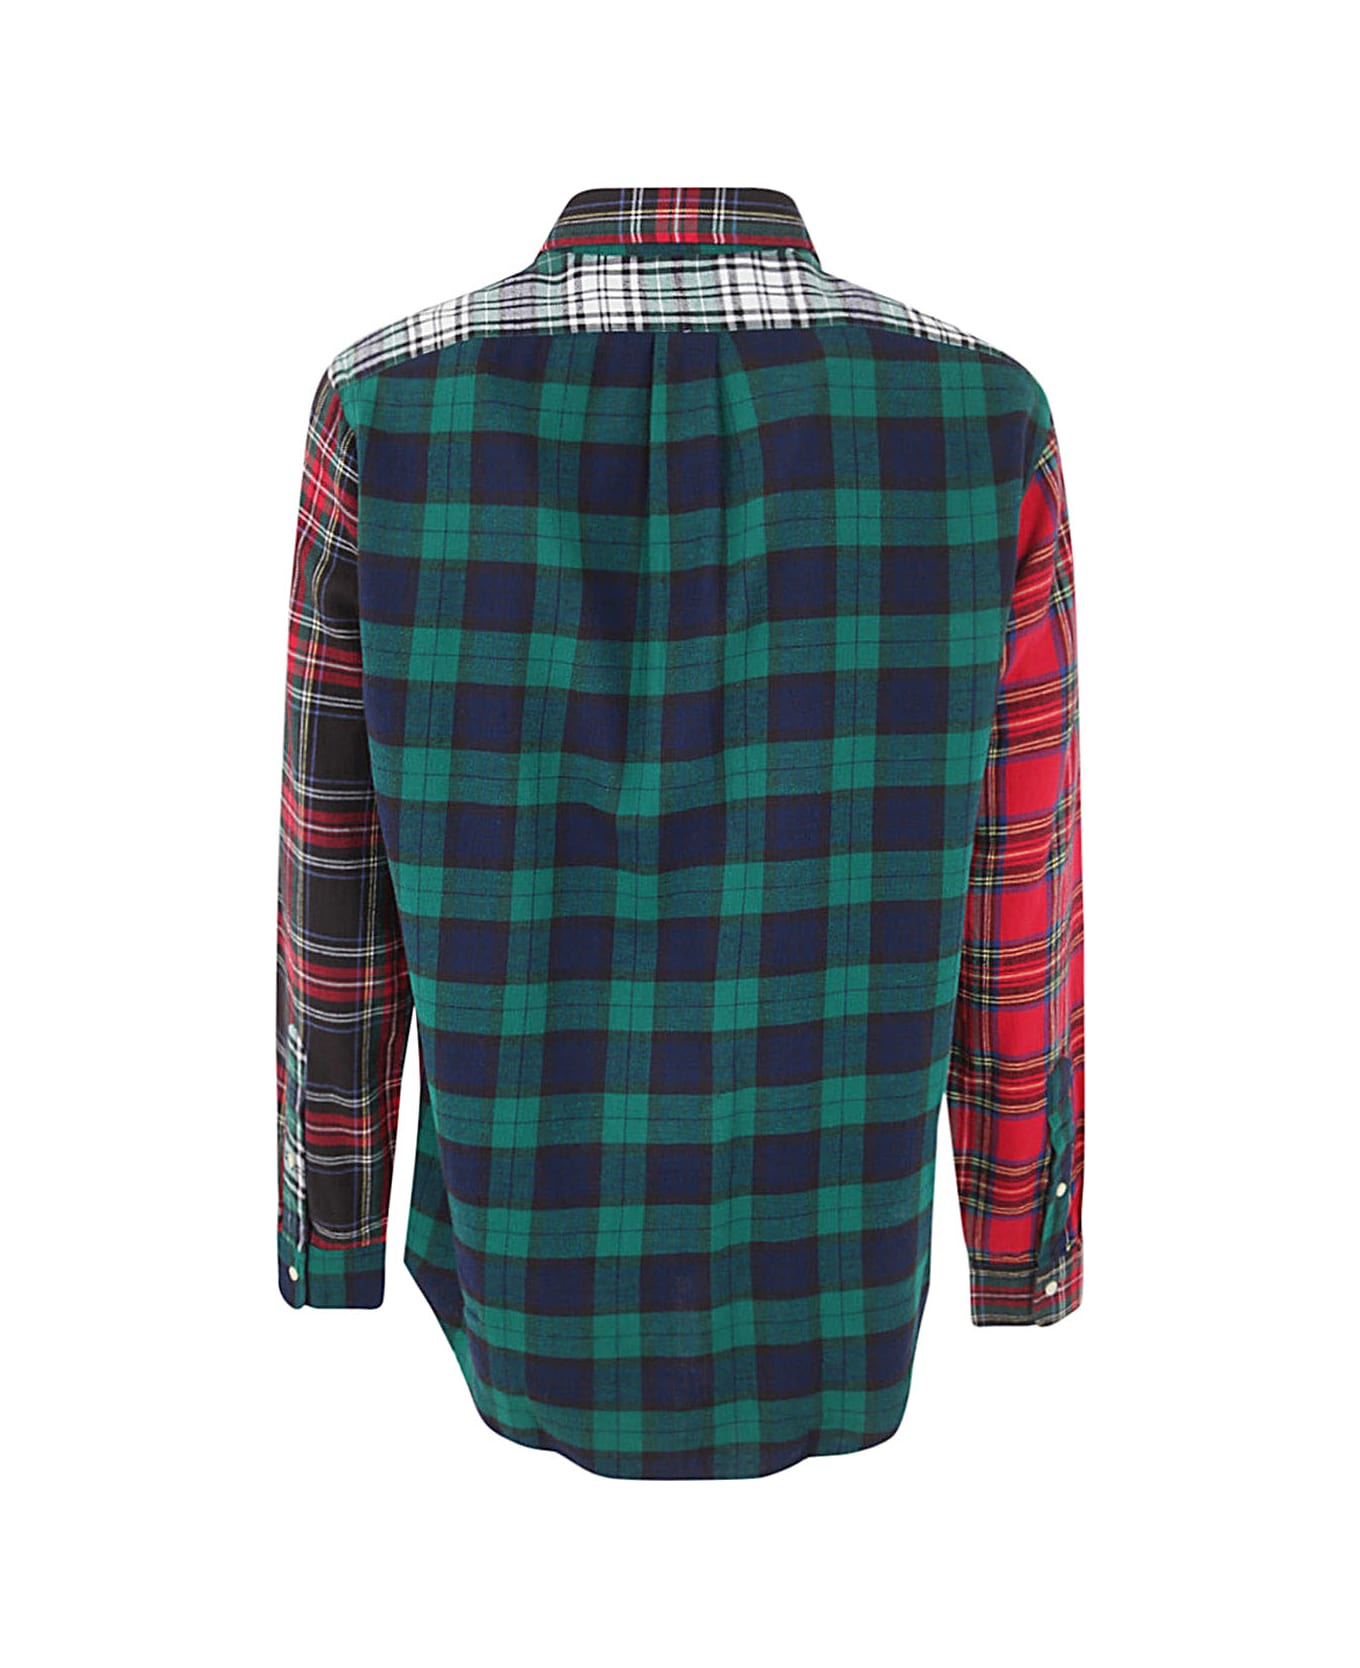 Polo Ralph Lauren Long Sleeve Sport Shirt - Tartan Funshirt シャツ